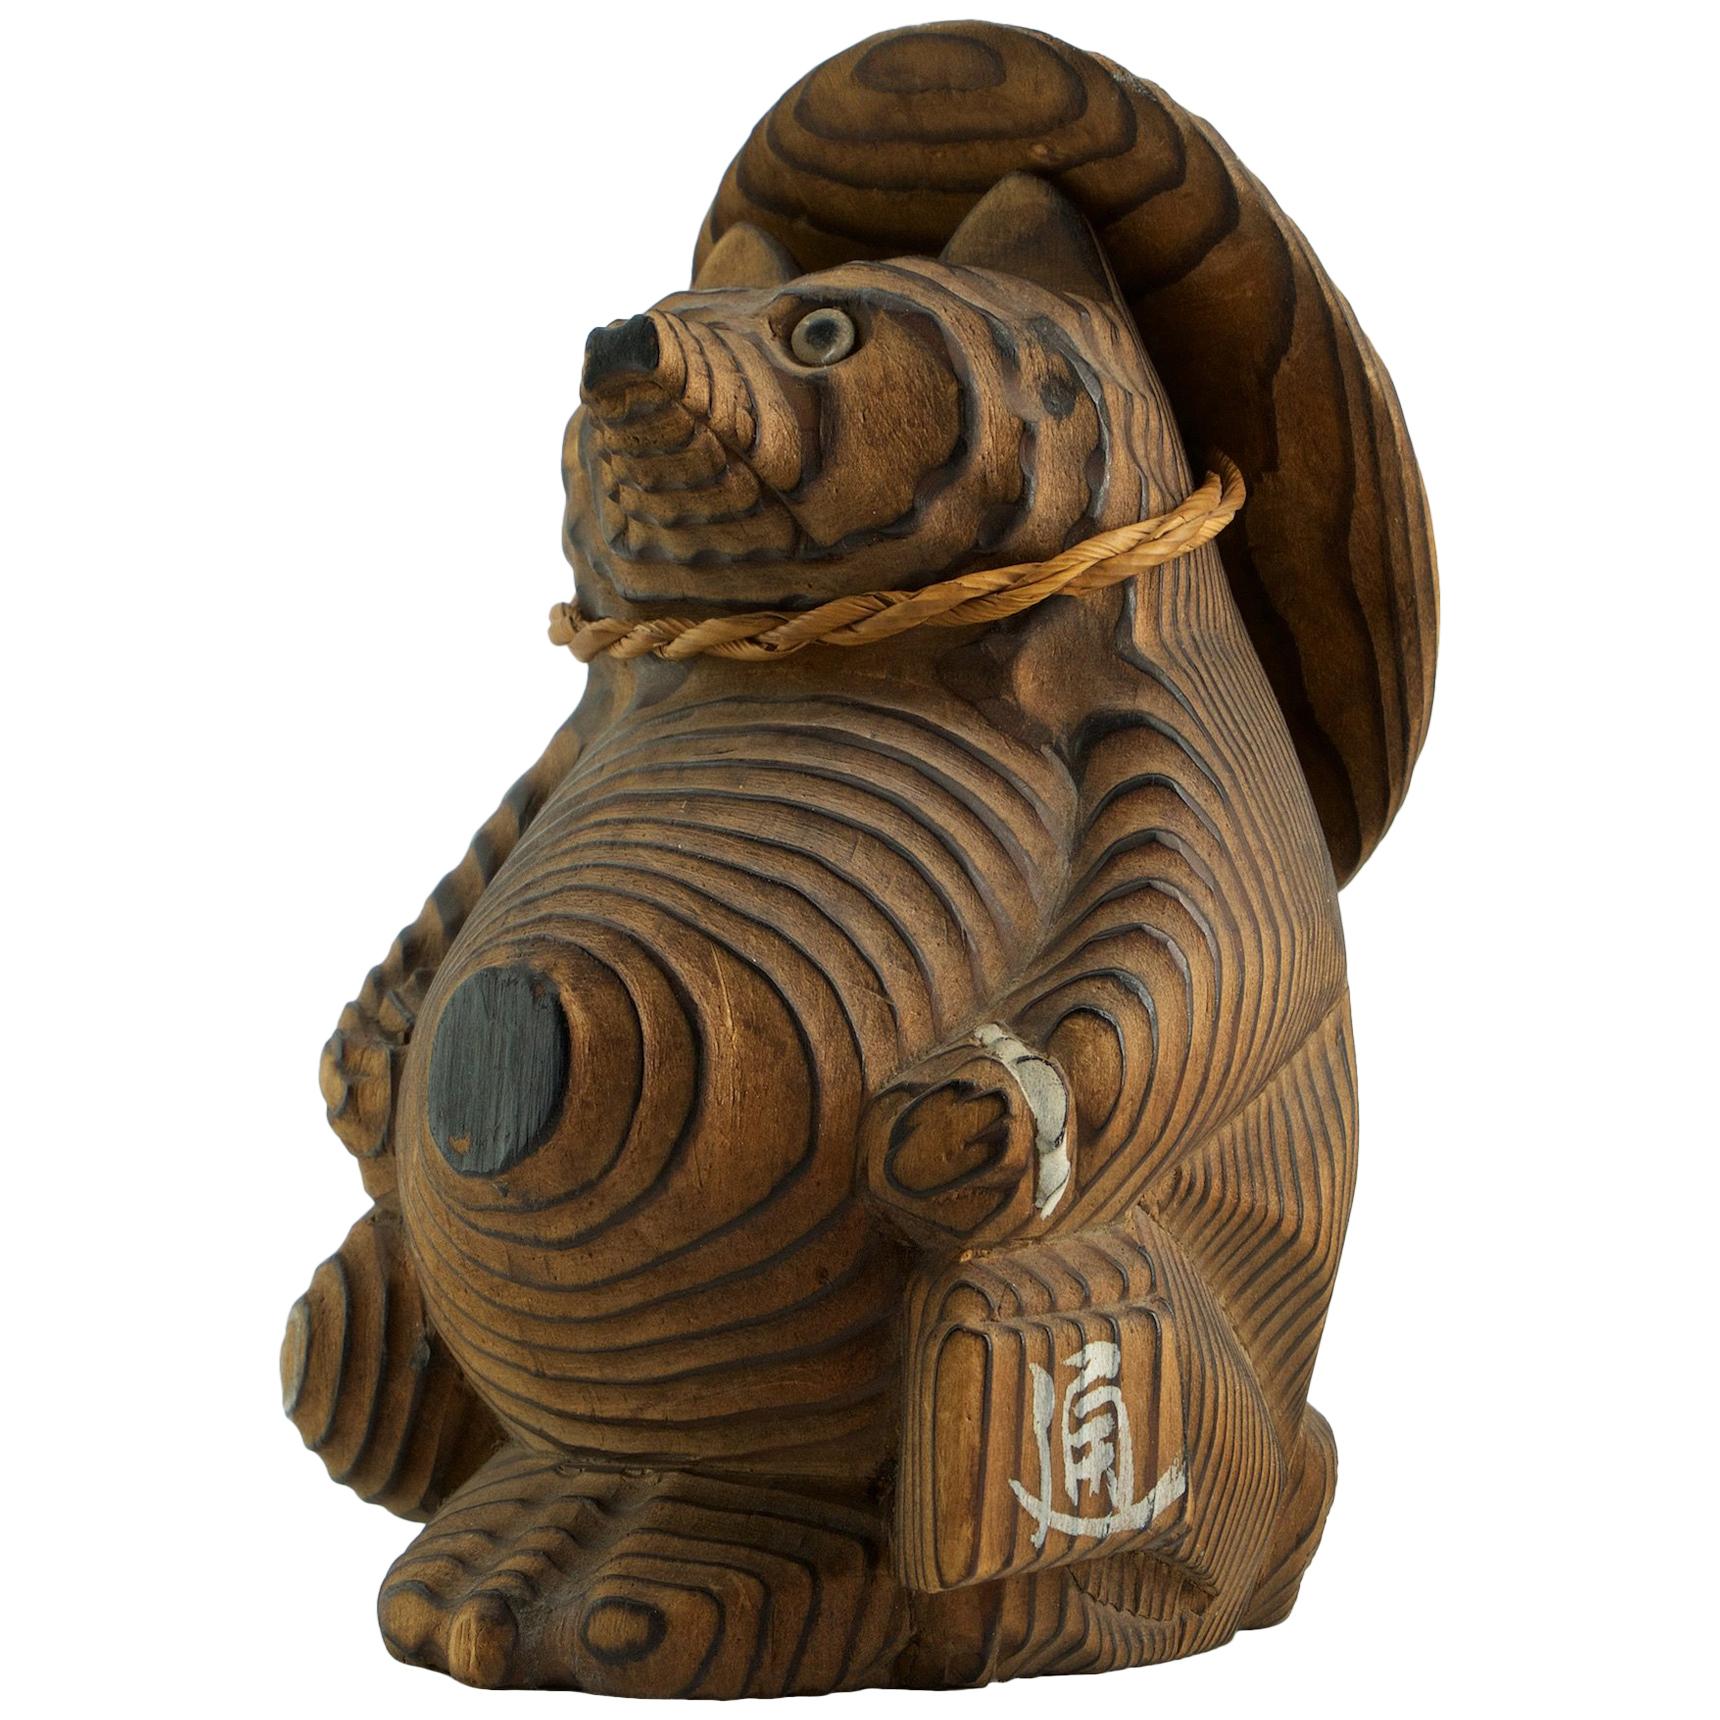 Shou-sugi-ban Japanischer Marderhund Skulptur Spielzeug Vintage Mid-Century Modern